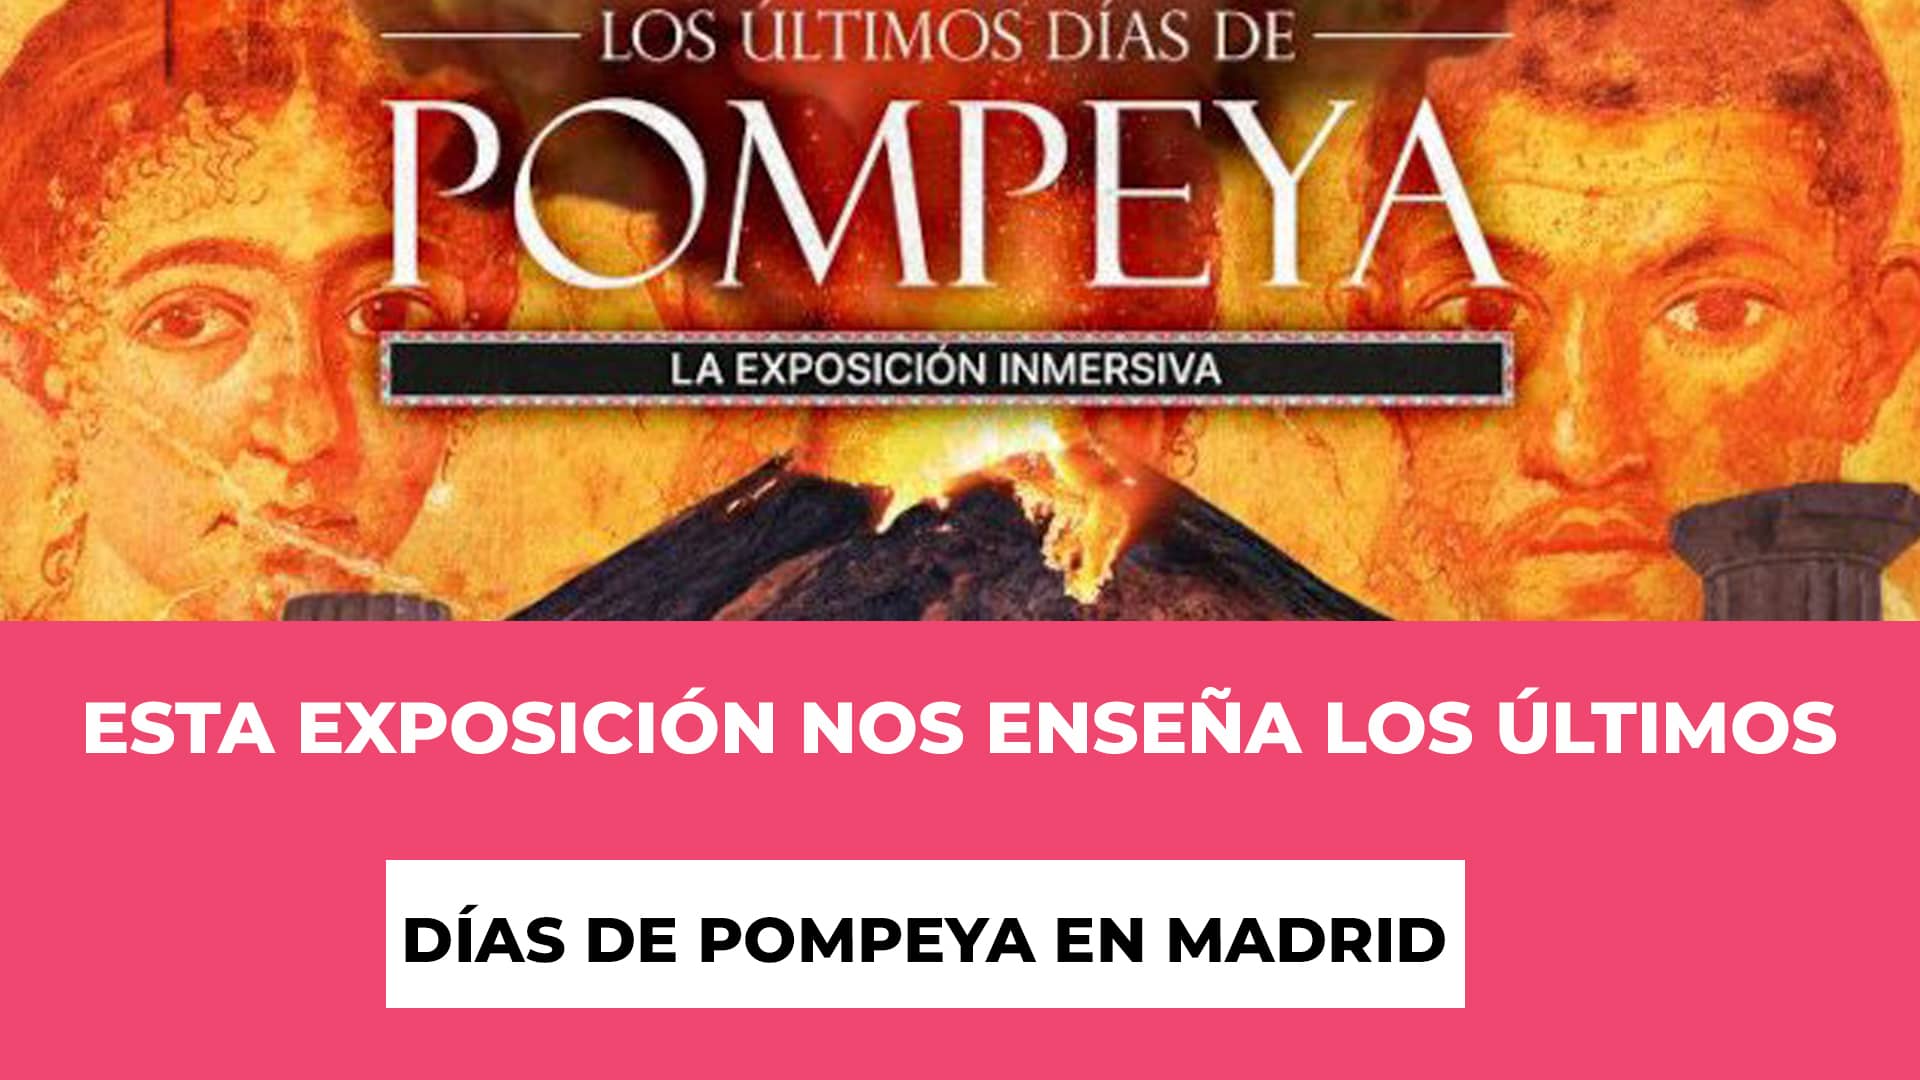 Esta exposición nos enseña Los Últimos Días de Pompeya Madrid - Fechas para ver la exposición - Recinto - Precios de las entradas